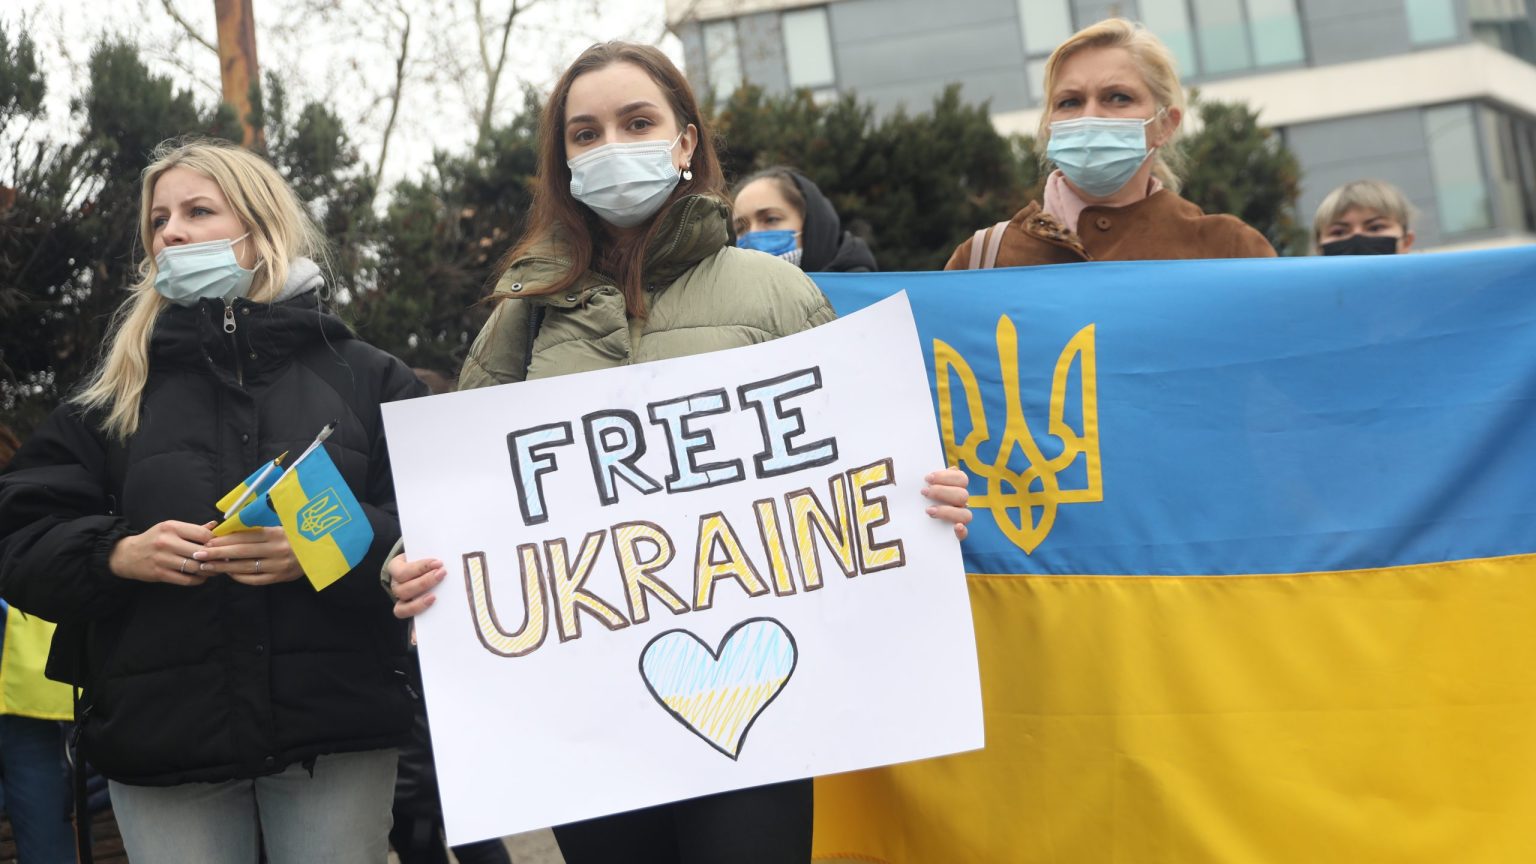 Slava Ukrayini! La valentía de los ucranianos 